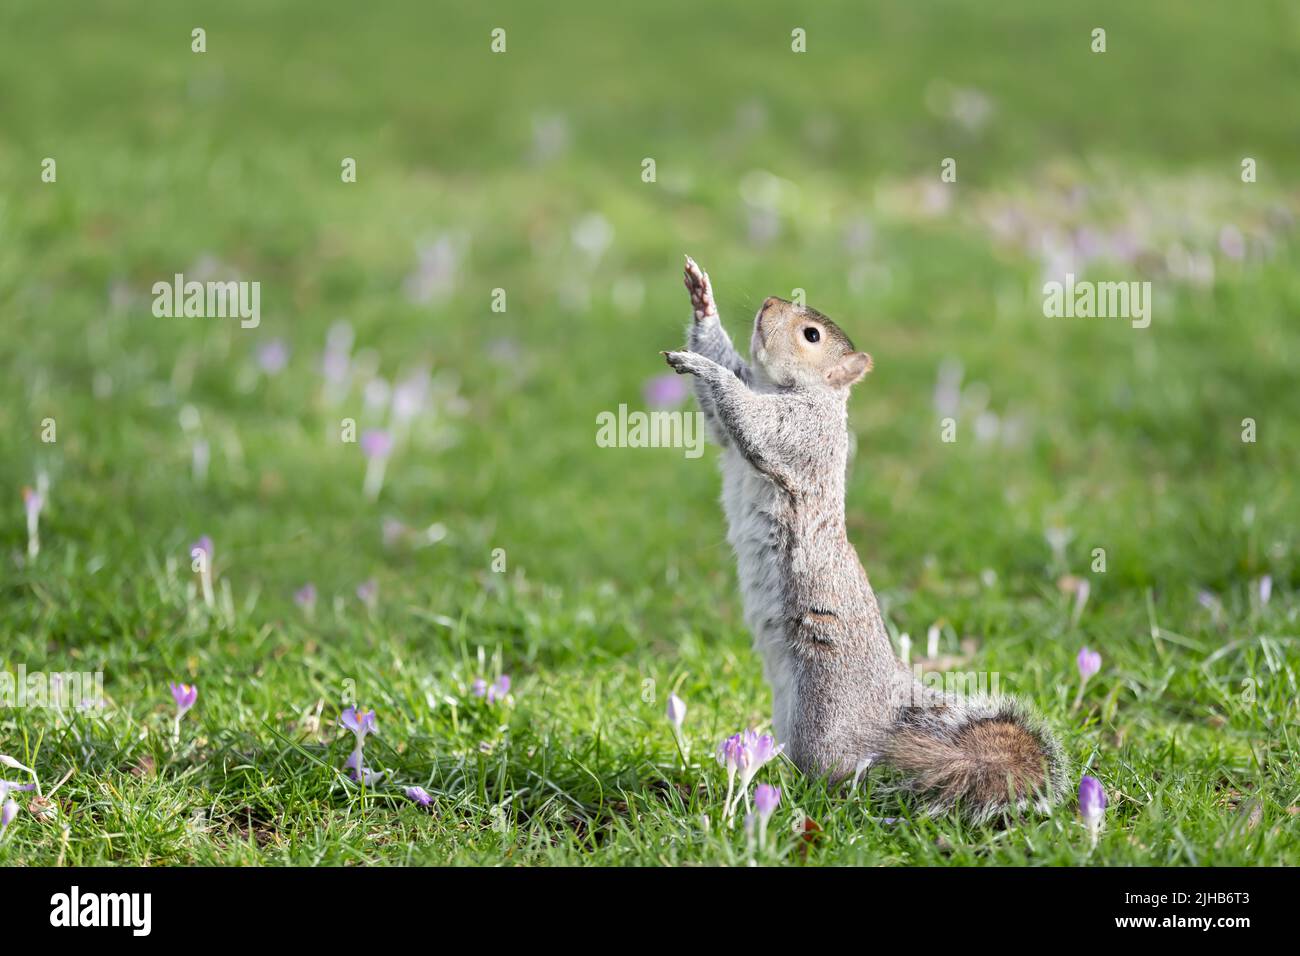 Nahaufnahme eines östlichen grauen Eichhörnchens, das auf seinen Hinterbeinen im grünen Gras mit Krokus steht, Großbritannien. Stockfoto